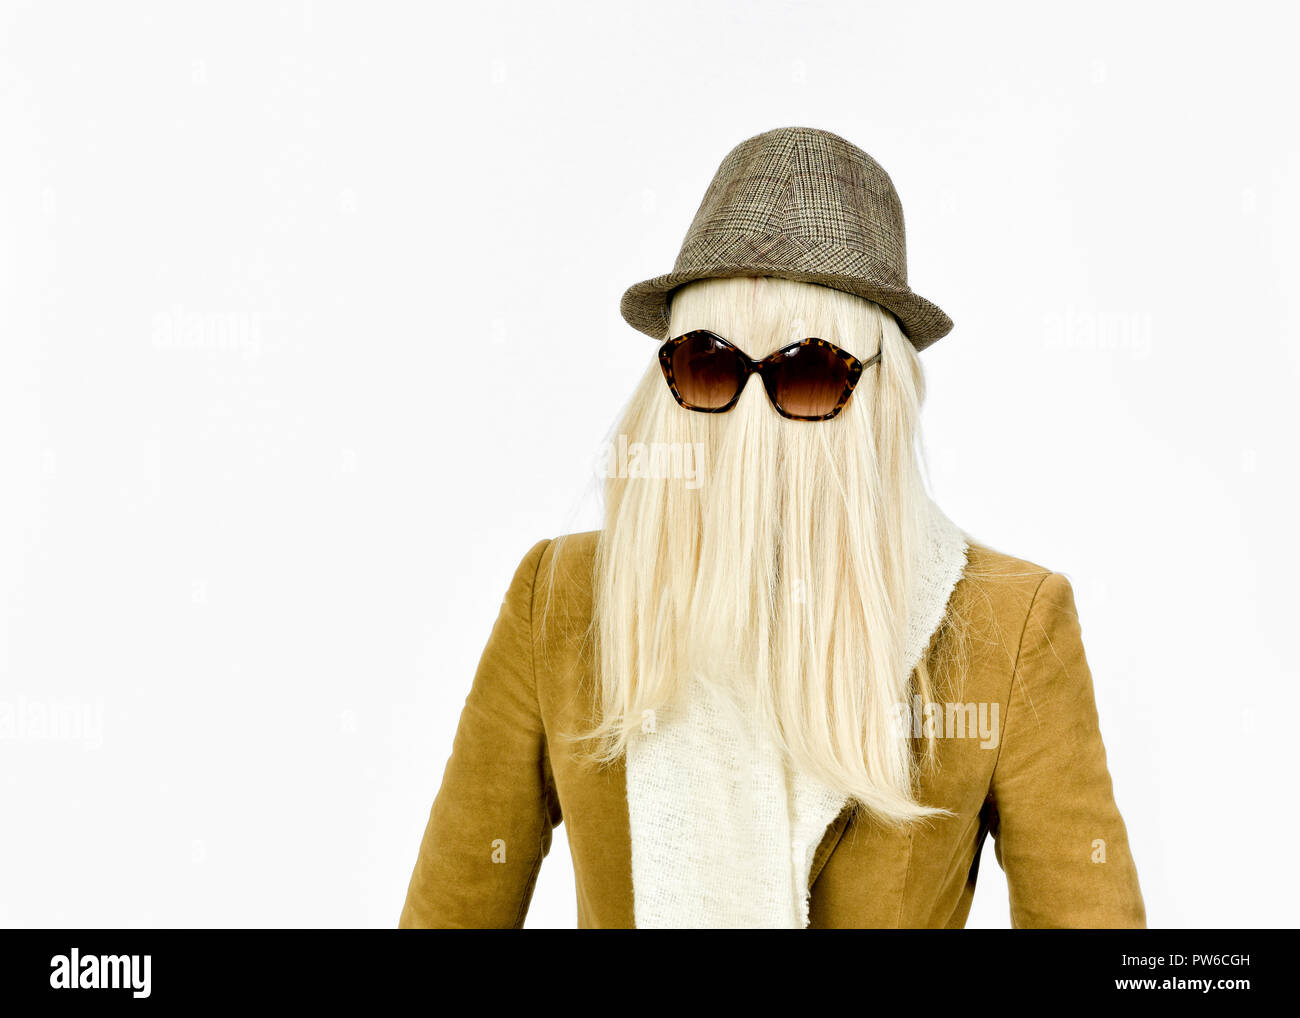 Fun immagine di donna con capelli lunghi biondi che ricopre la faccia e occhiali da sole a giocare vestire per Halloween come Cugino ITT Foto Stock